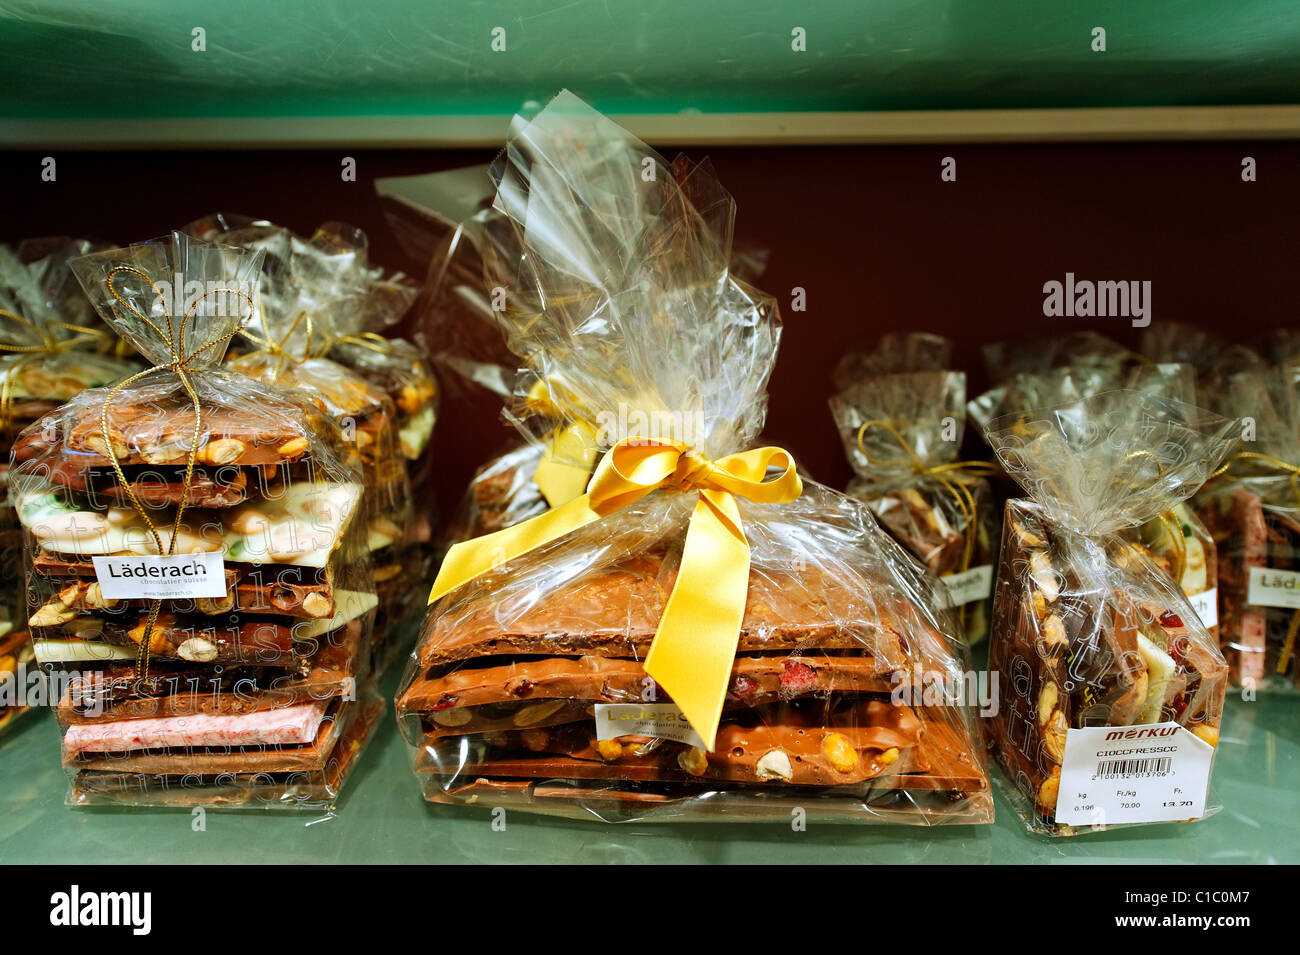 Schokolade shop Laderach Merkur, Via Nassa, Lugano, Schweiz, Europa Stockfoto